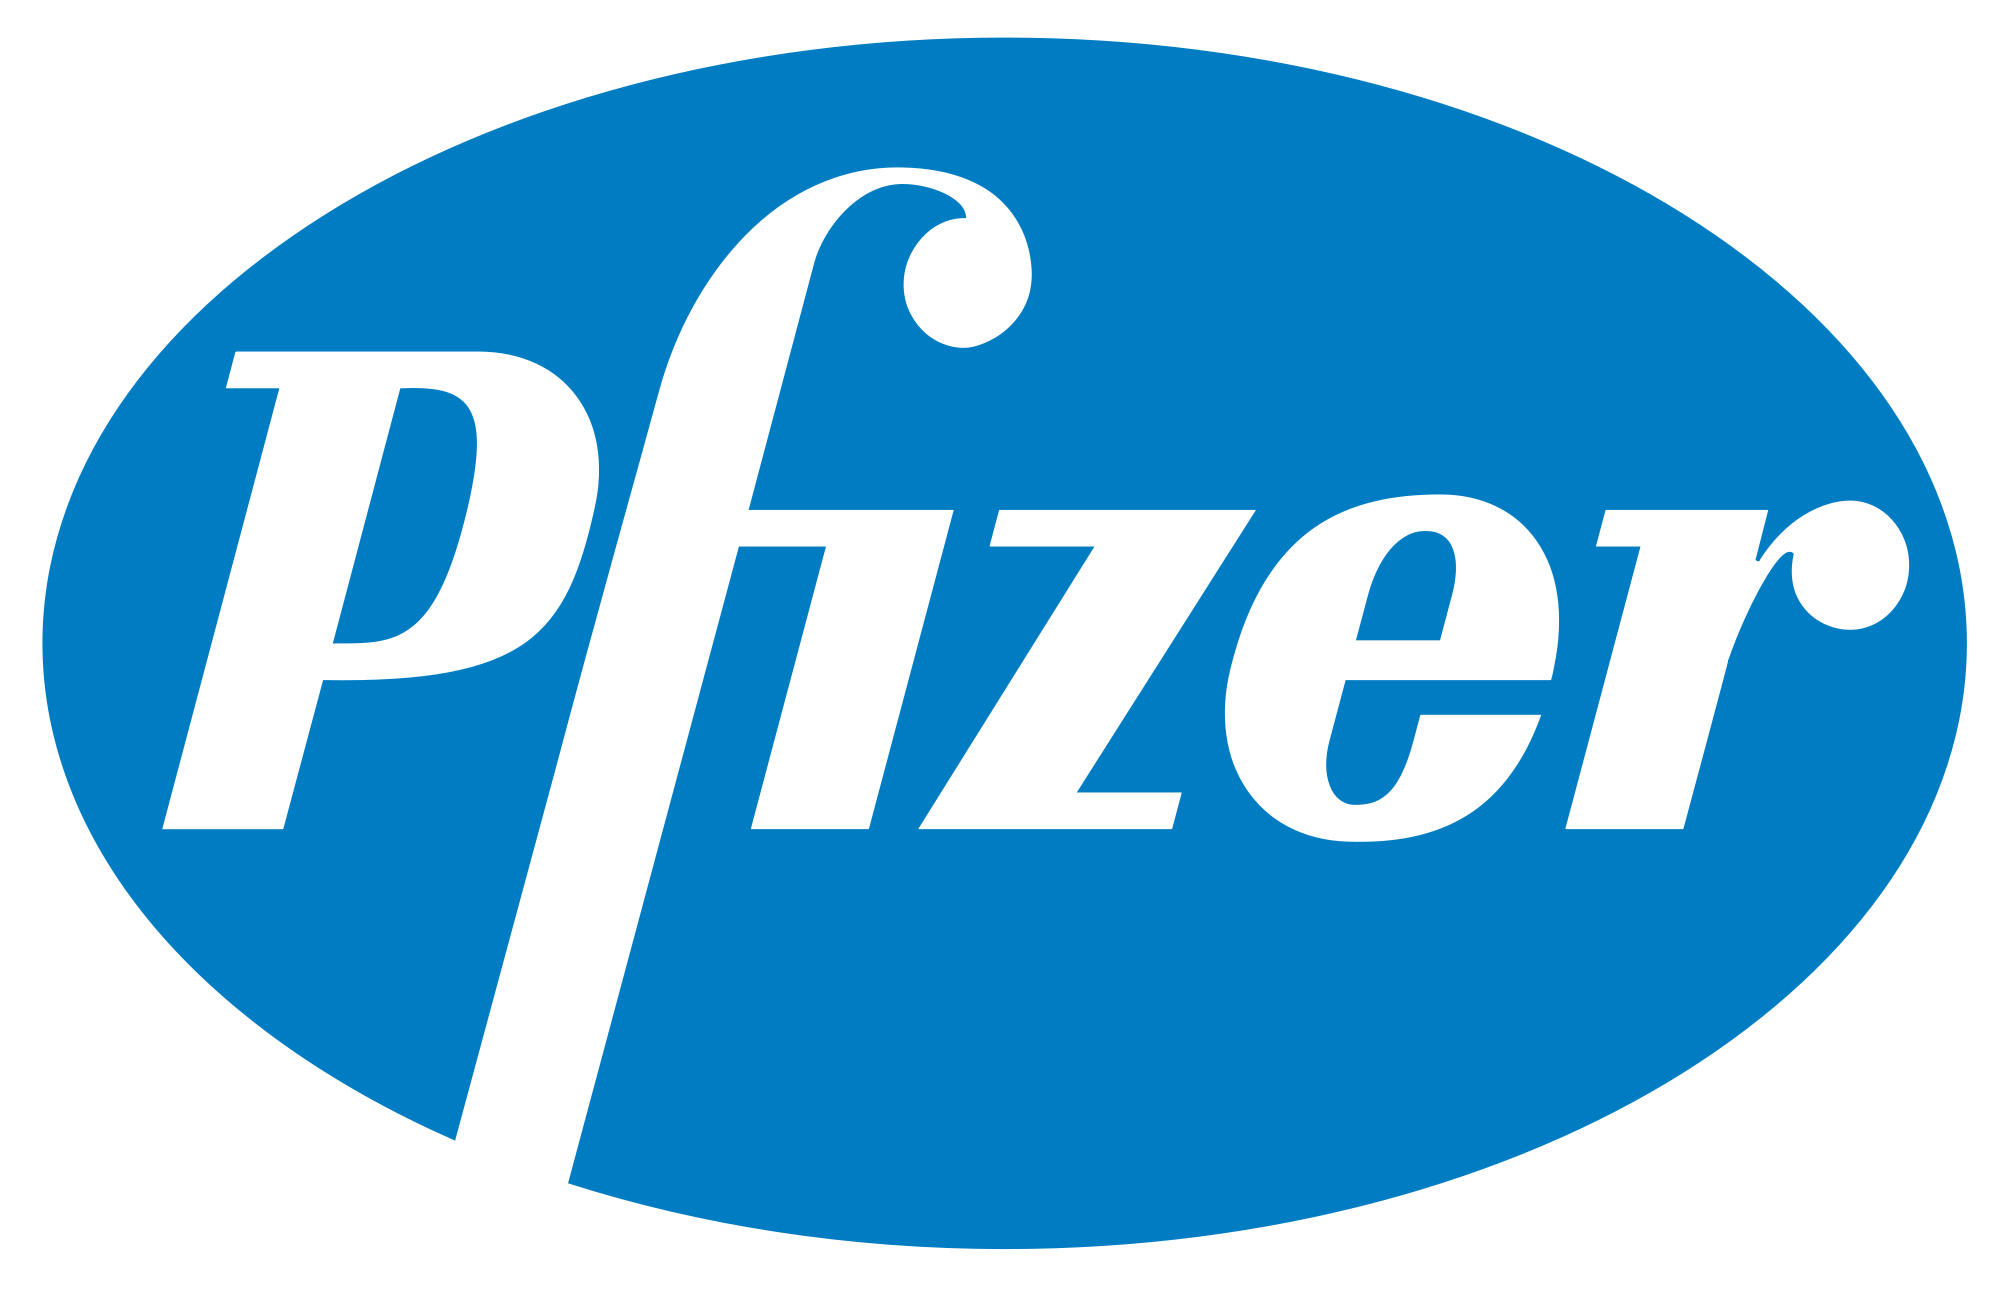 Pfizer Logo - File:Pfizer logo.svg - Wikimedia Commons